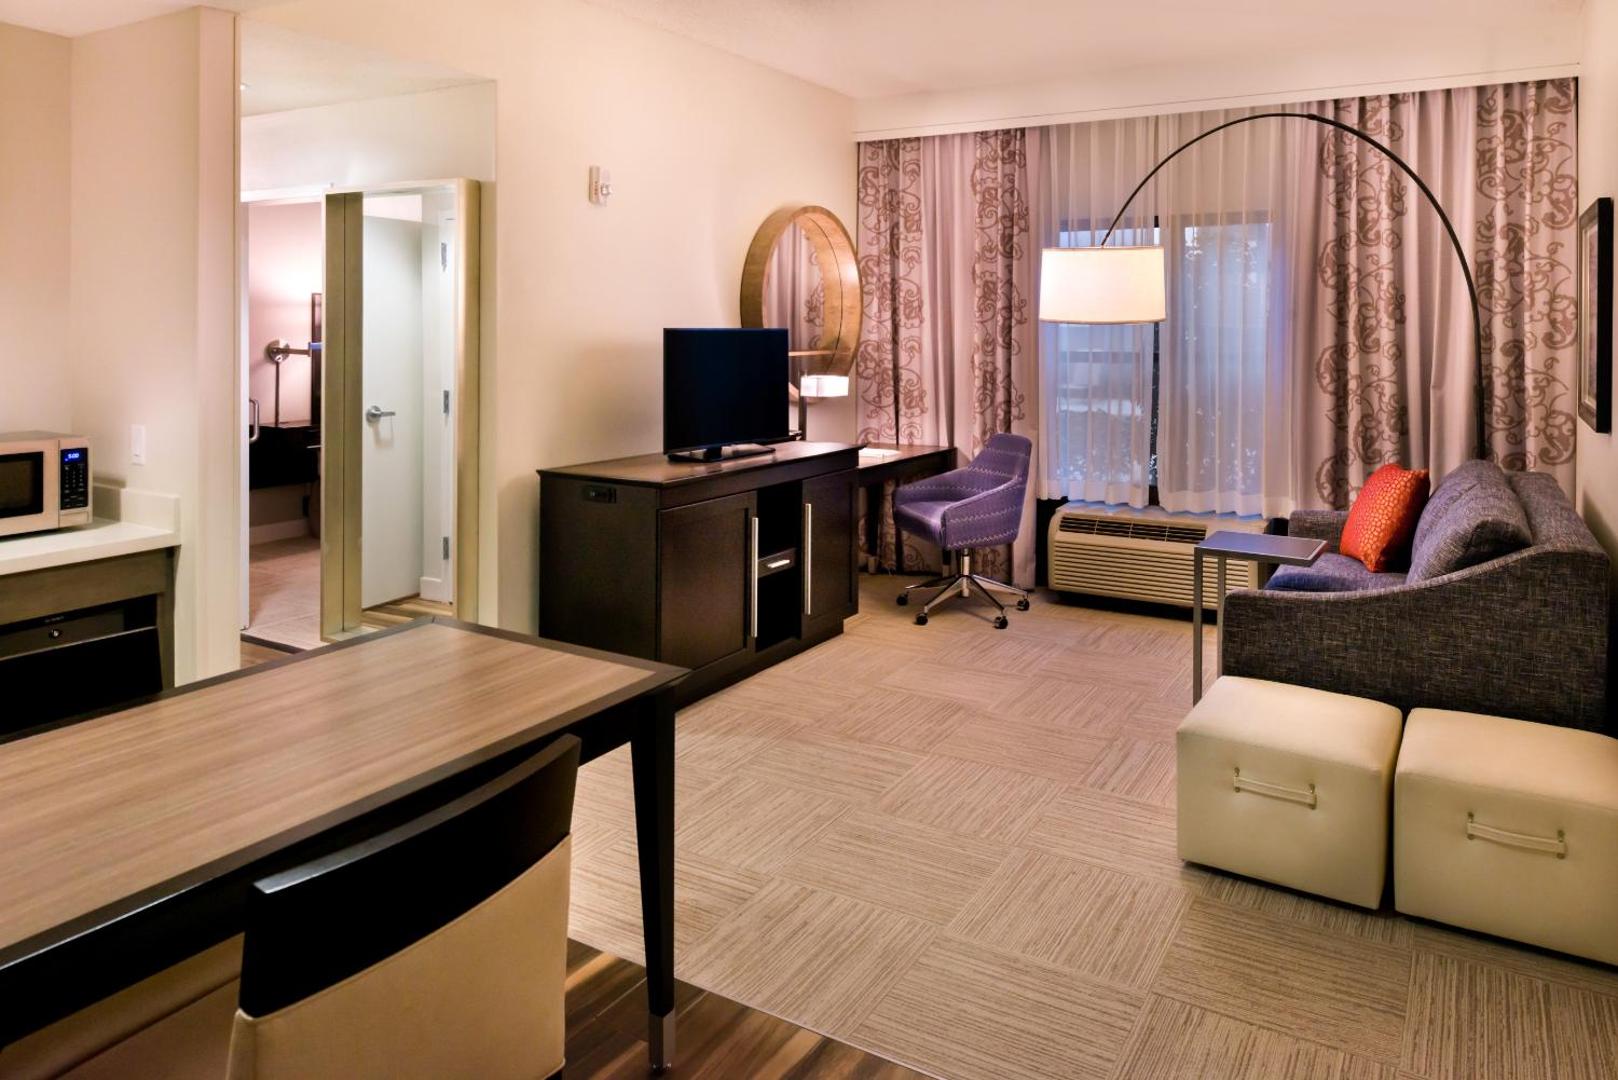 Hampton Inn & Suites Orlando/East UCF Area